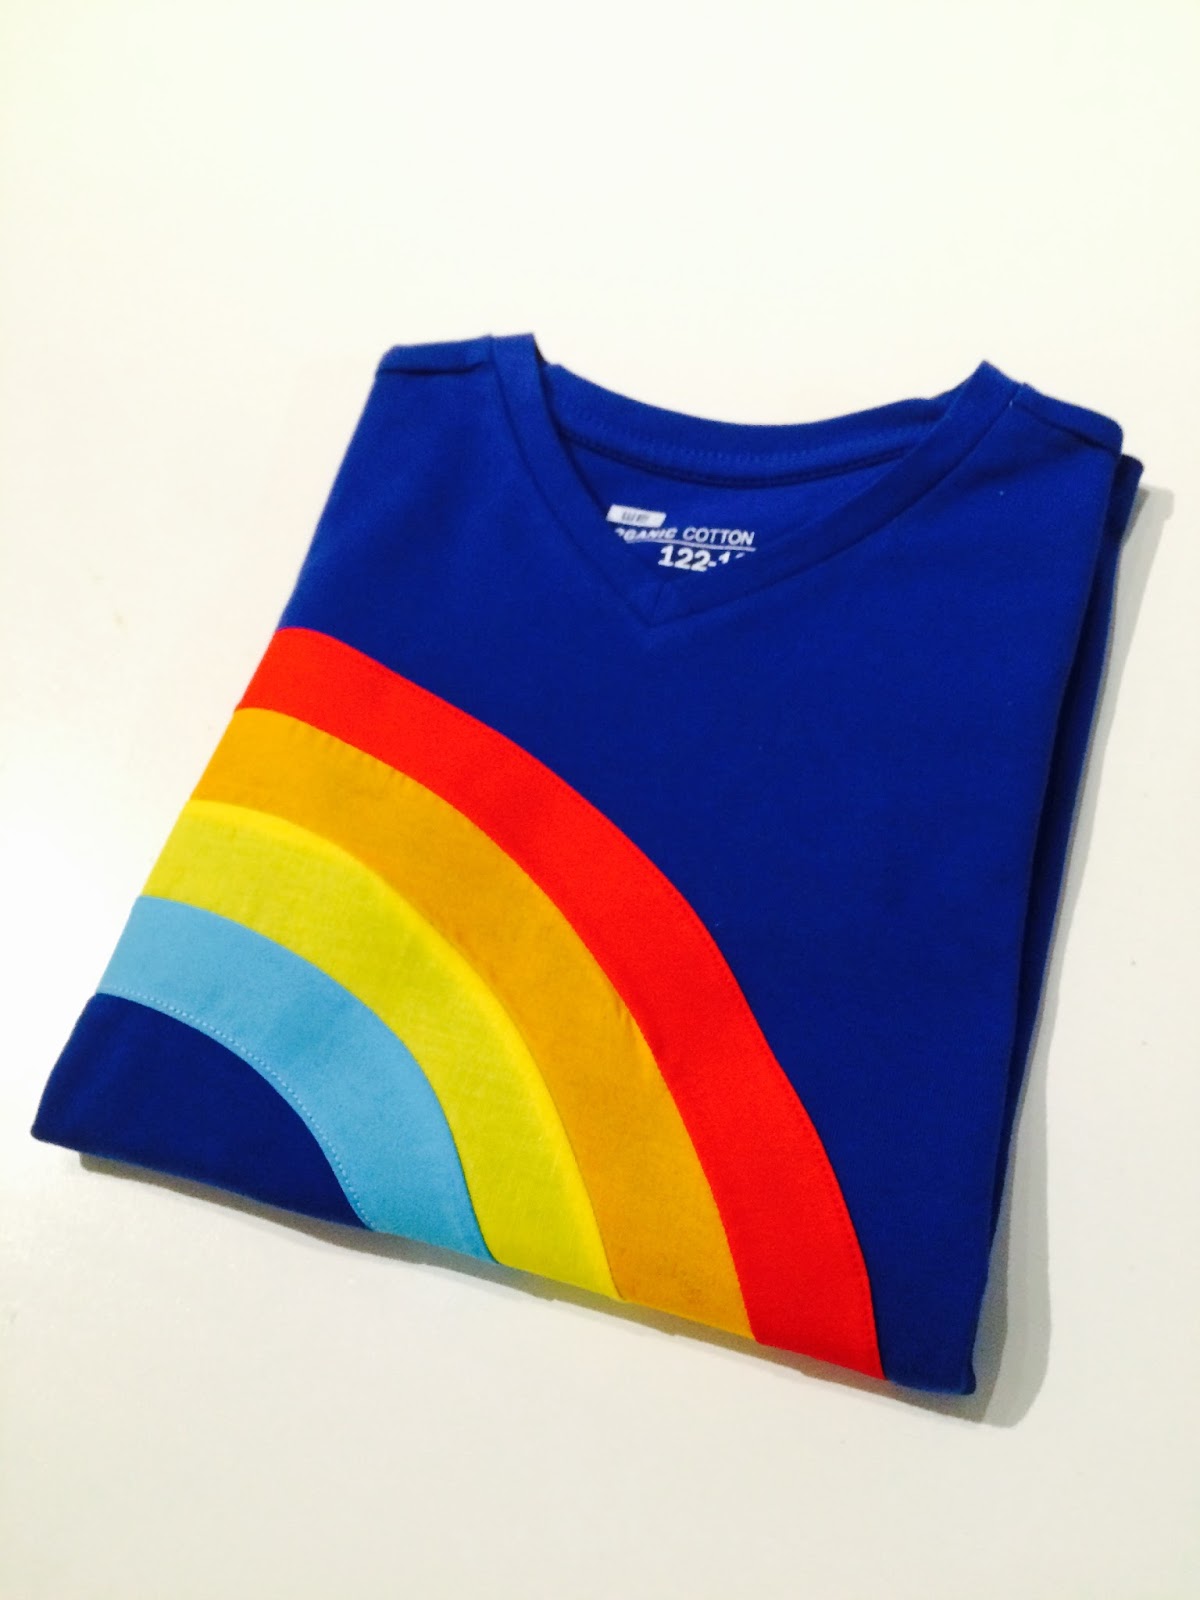 De Hippe Uil: Regenboog shirt van K3